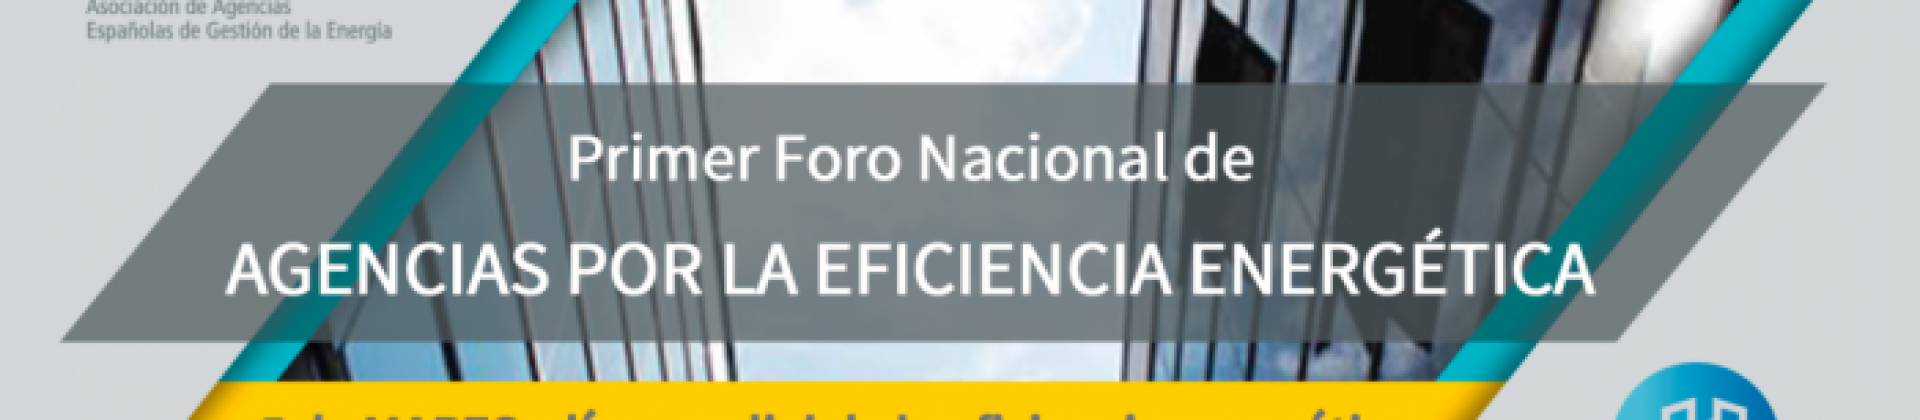 I Foro Nacional de Agencias por la Eficiencia Energética. Imagen obtenida Web Agencia Andaluza de la Energía